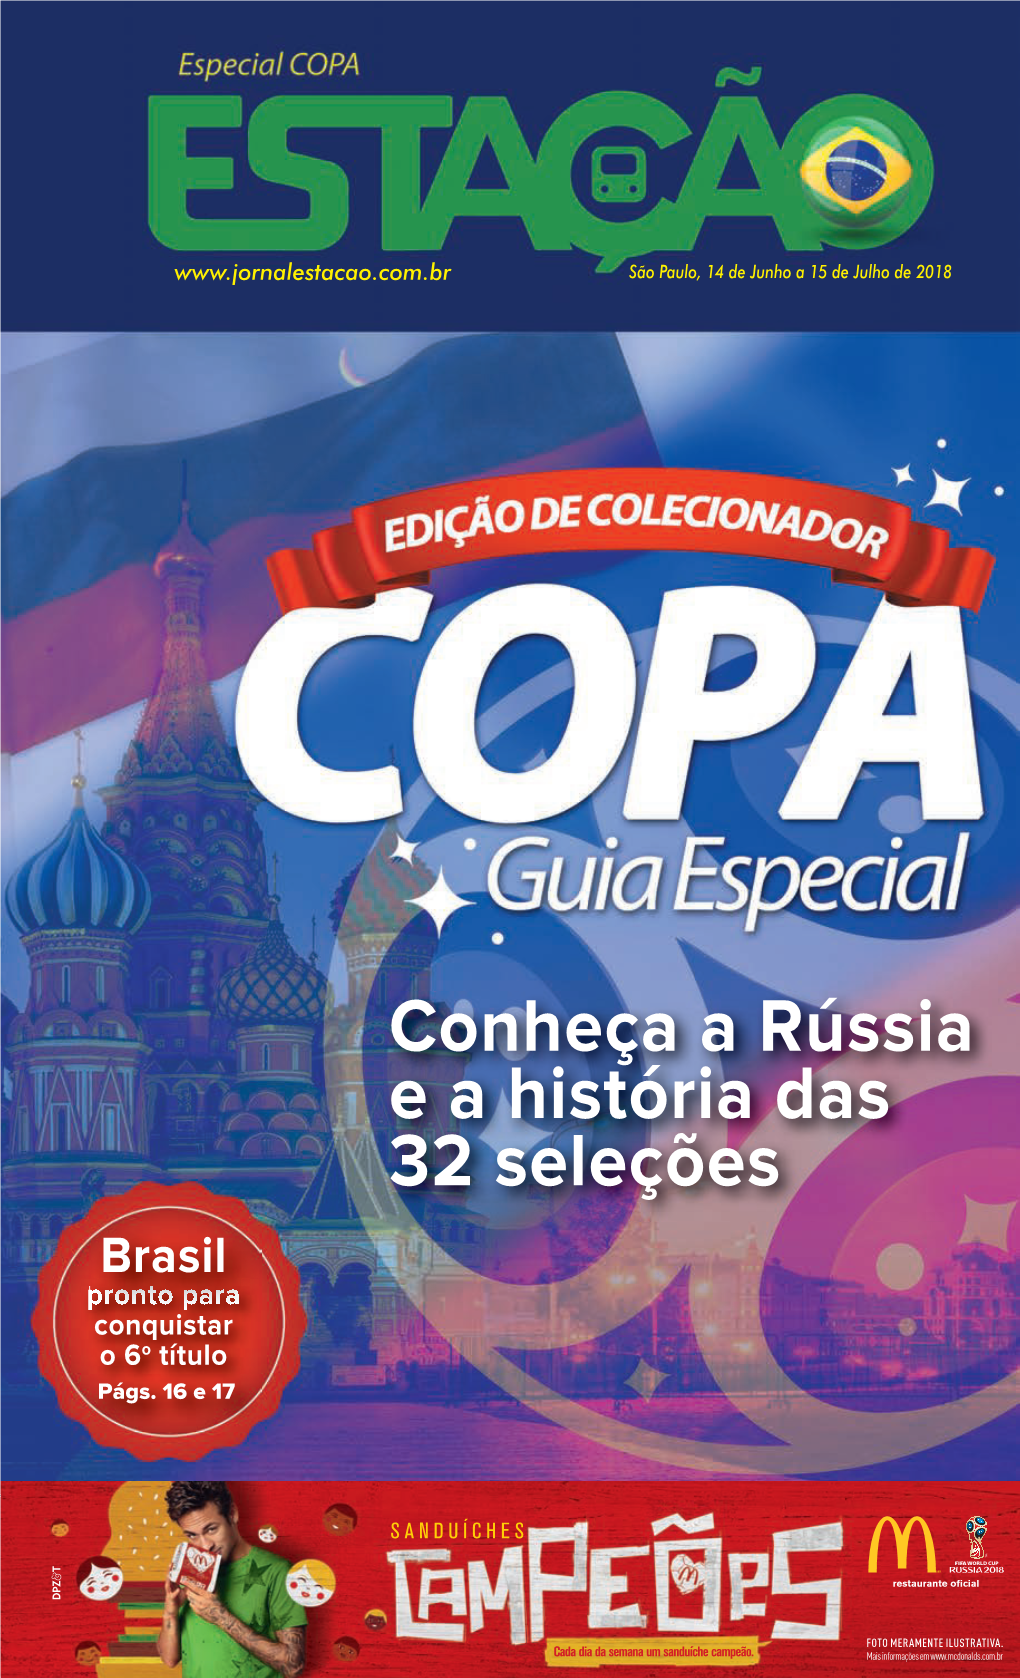 Conheça a Rússia E a História Das 32 Seleções Brasil Pronto Para Conquistar O 6O Título Págs